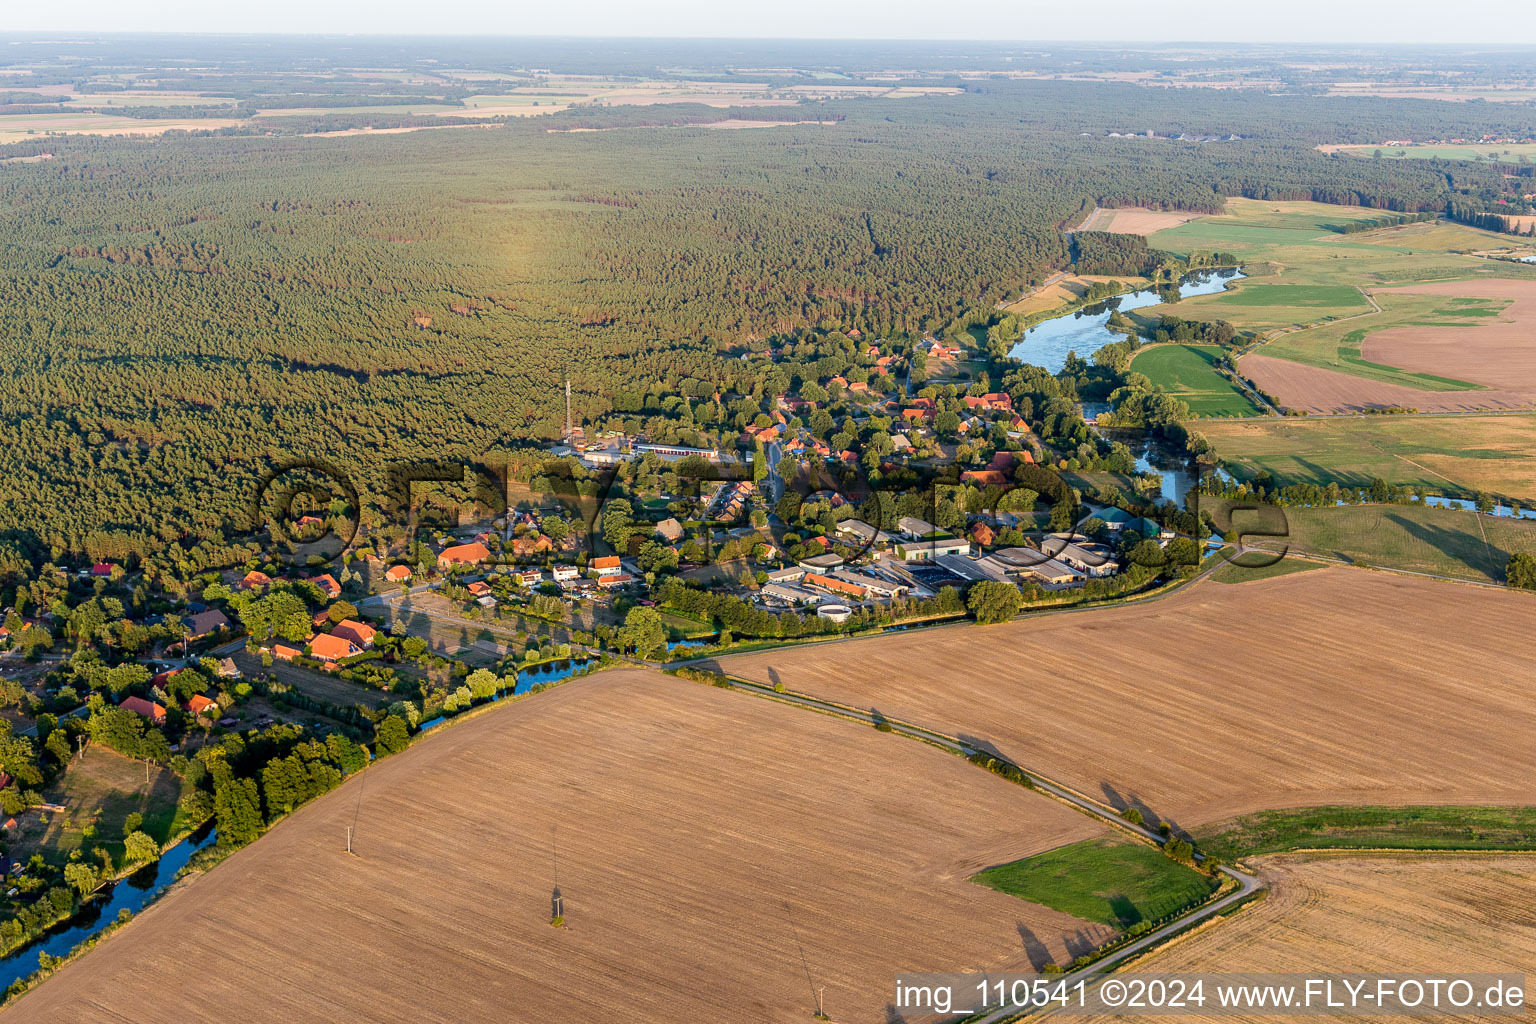 Vue aérienne de Champs agricoles et surfaces utilisables à Zeetze dans le département Basse-Saxe, Allemagne